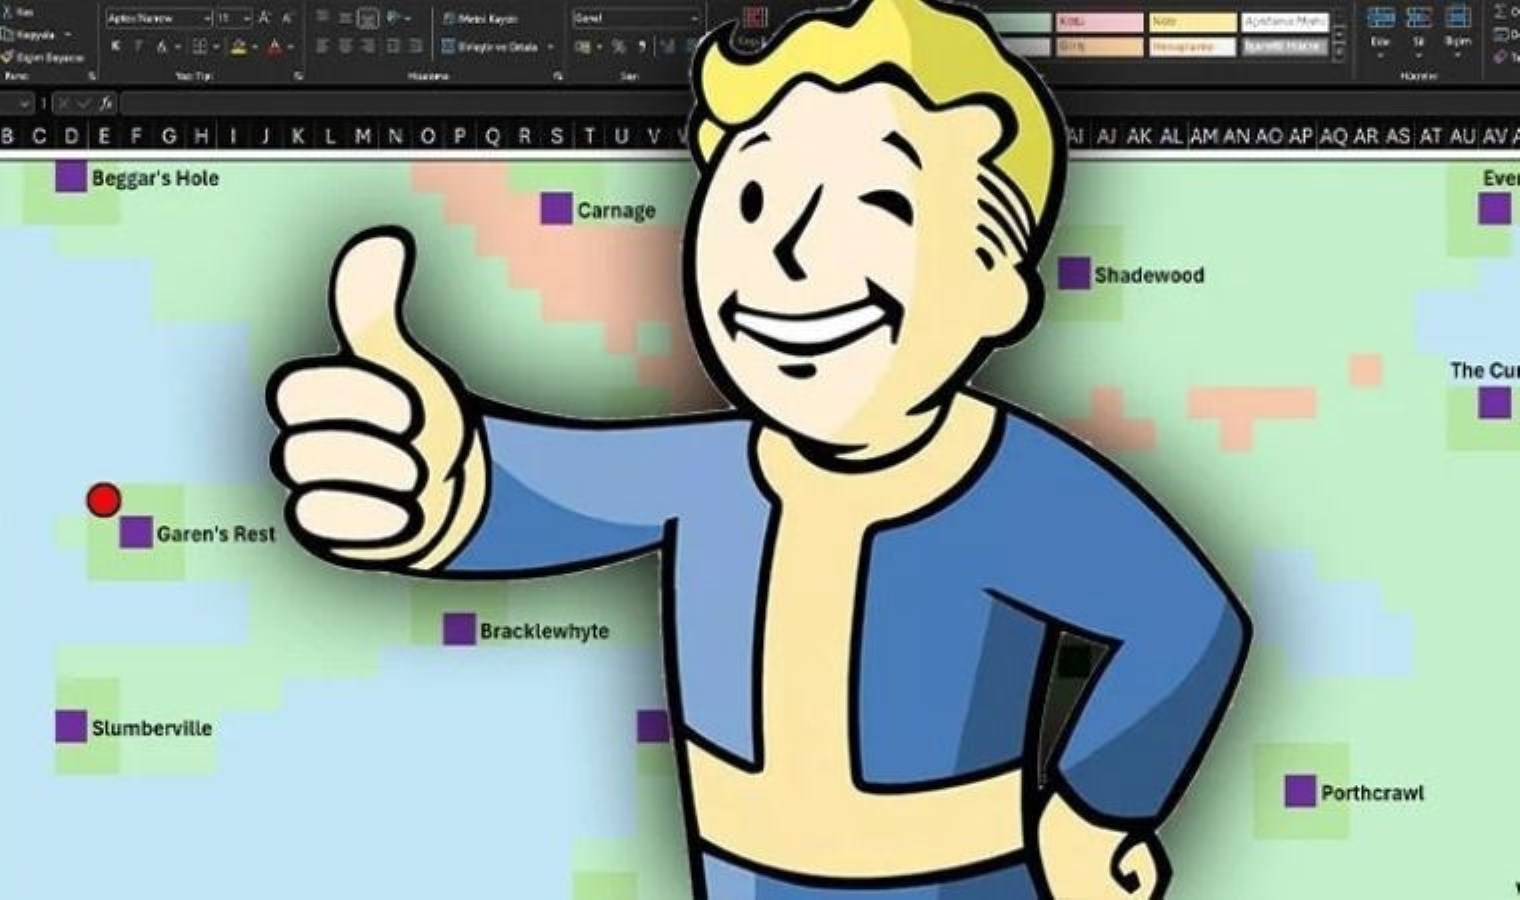 在 Excel 上运行的 Fallout RPG 游戏已经制作完成！每个人都可以玩 - 最后一刻科技新闻